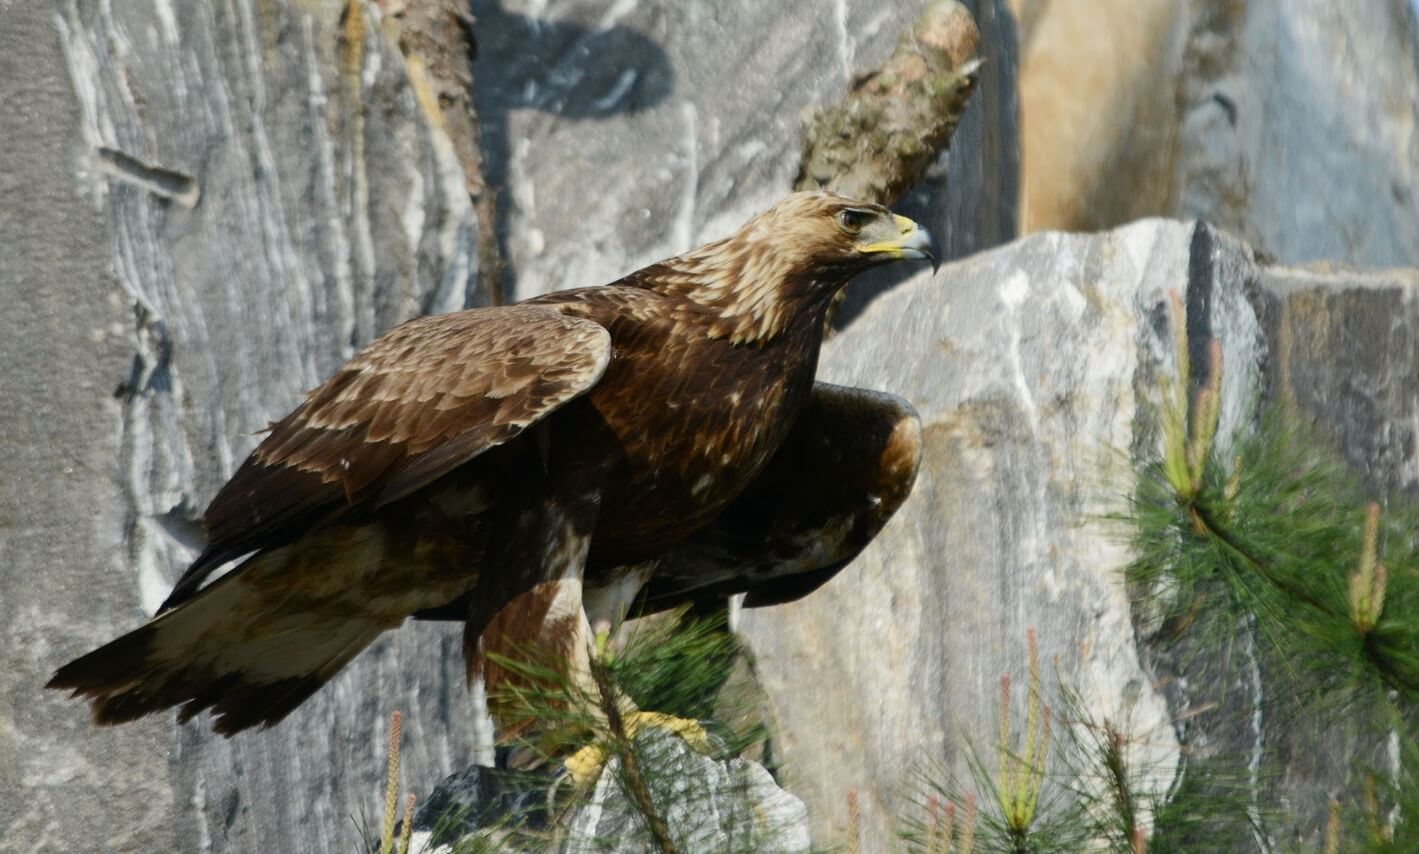 Беркут — золотой орел. Орел, замеченный в демилитаризированной зоне Кореи. Фото.